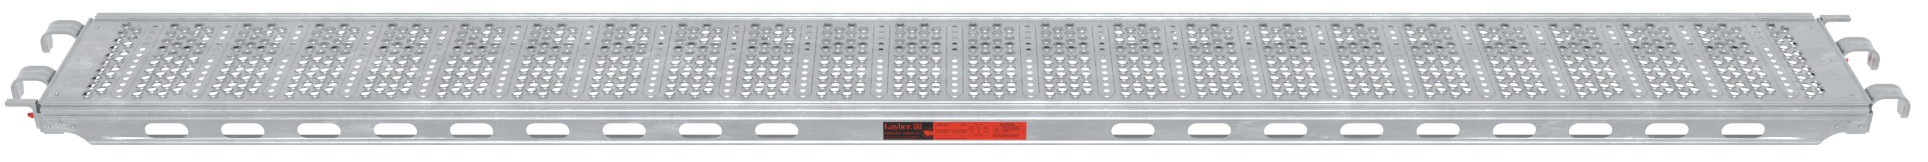 Layher Steel Deck Léger